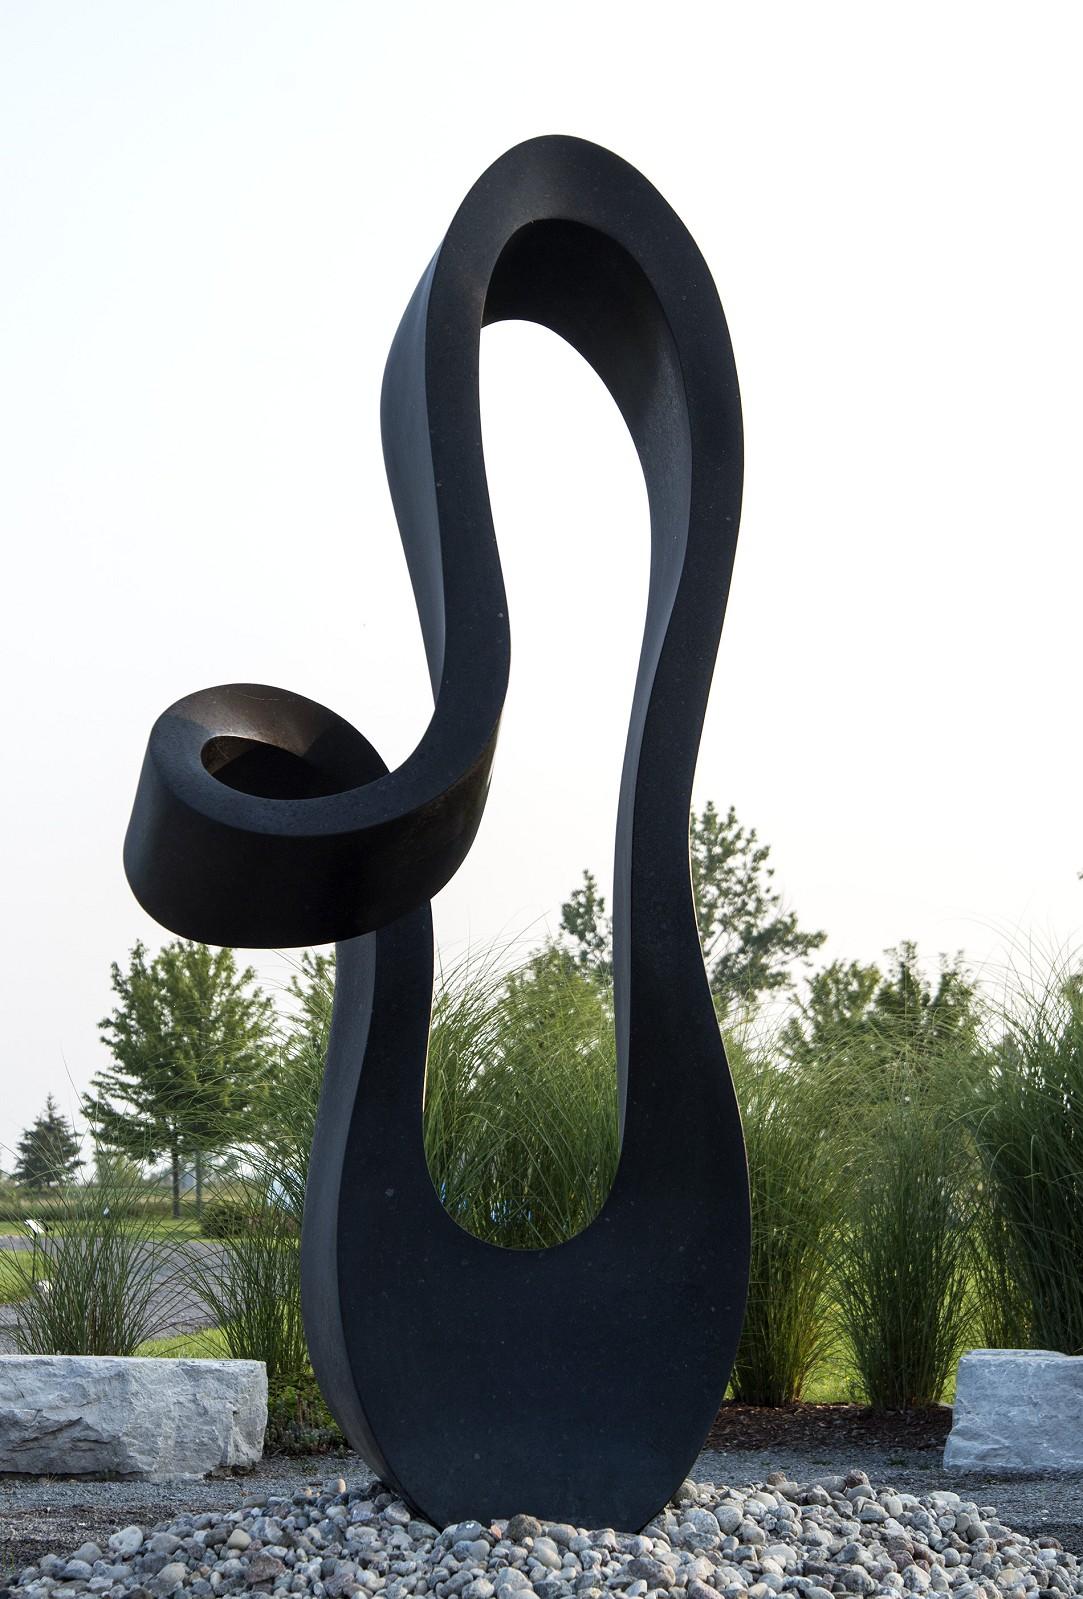 jeremy guy sculpture